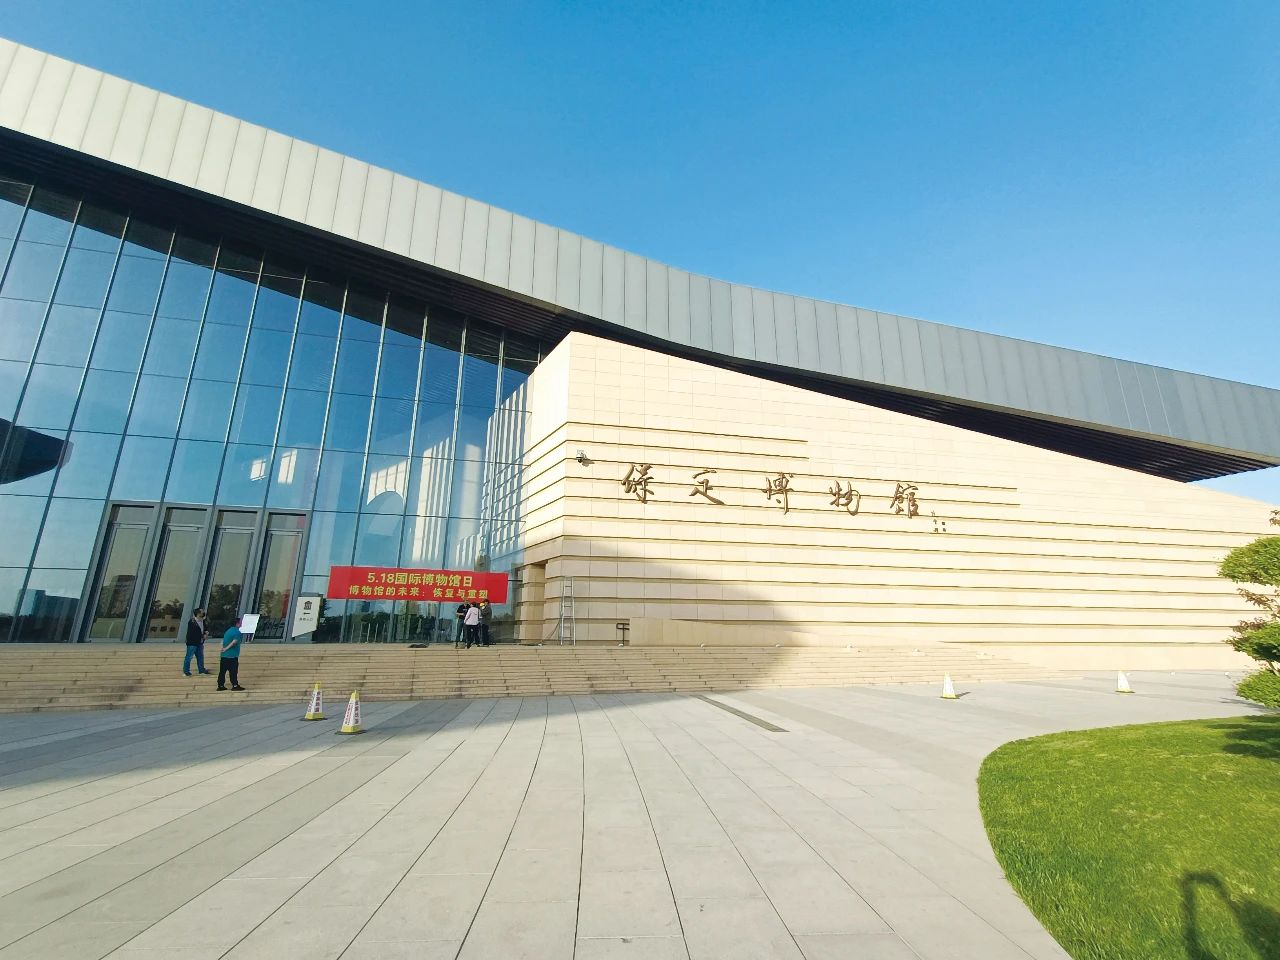 河北省保定市博物馆新馆自今年中旬正式开馆以来,受到社会各界的热烈